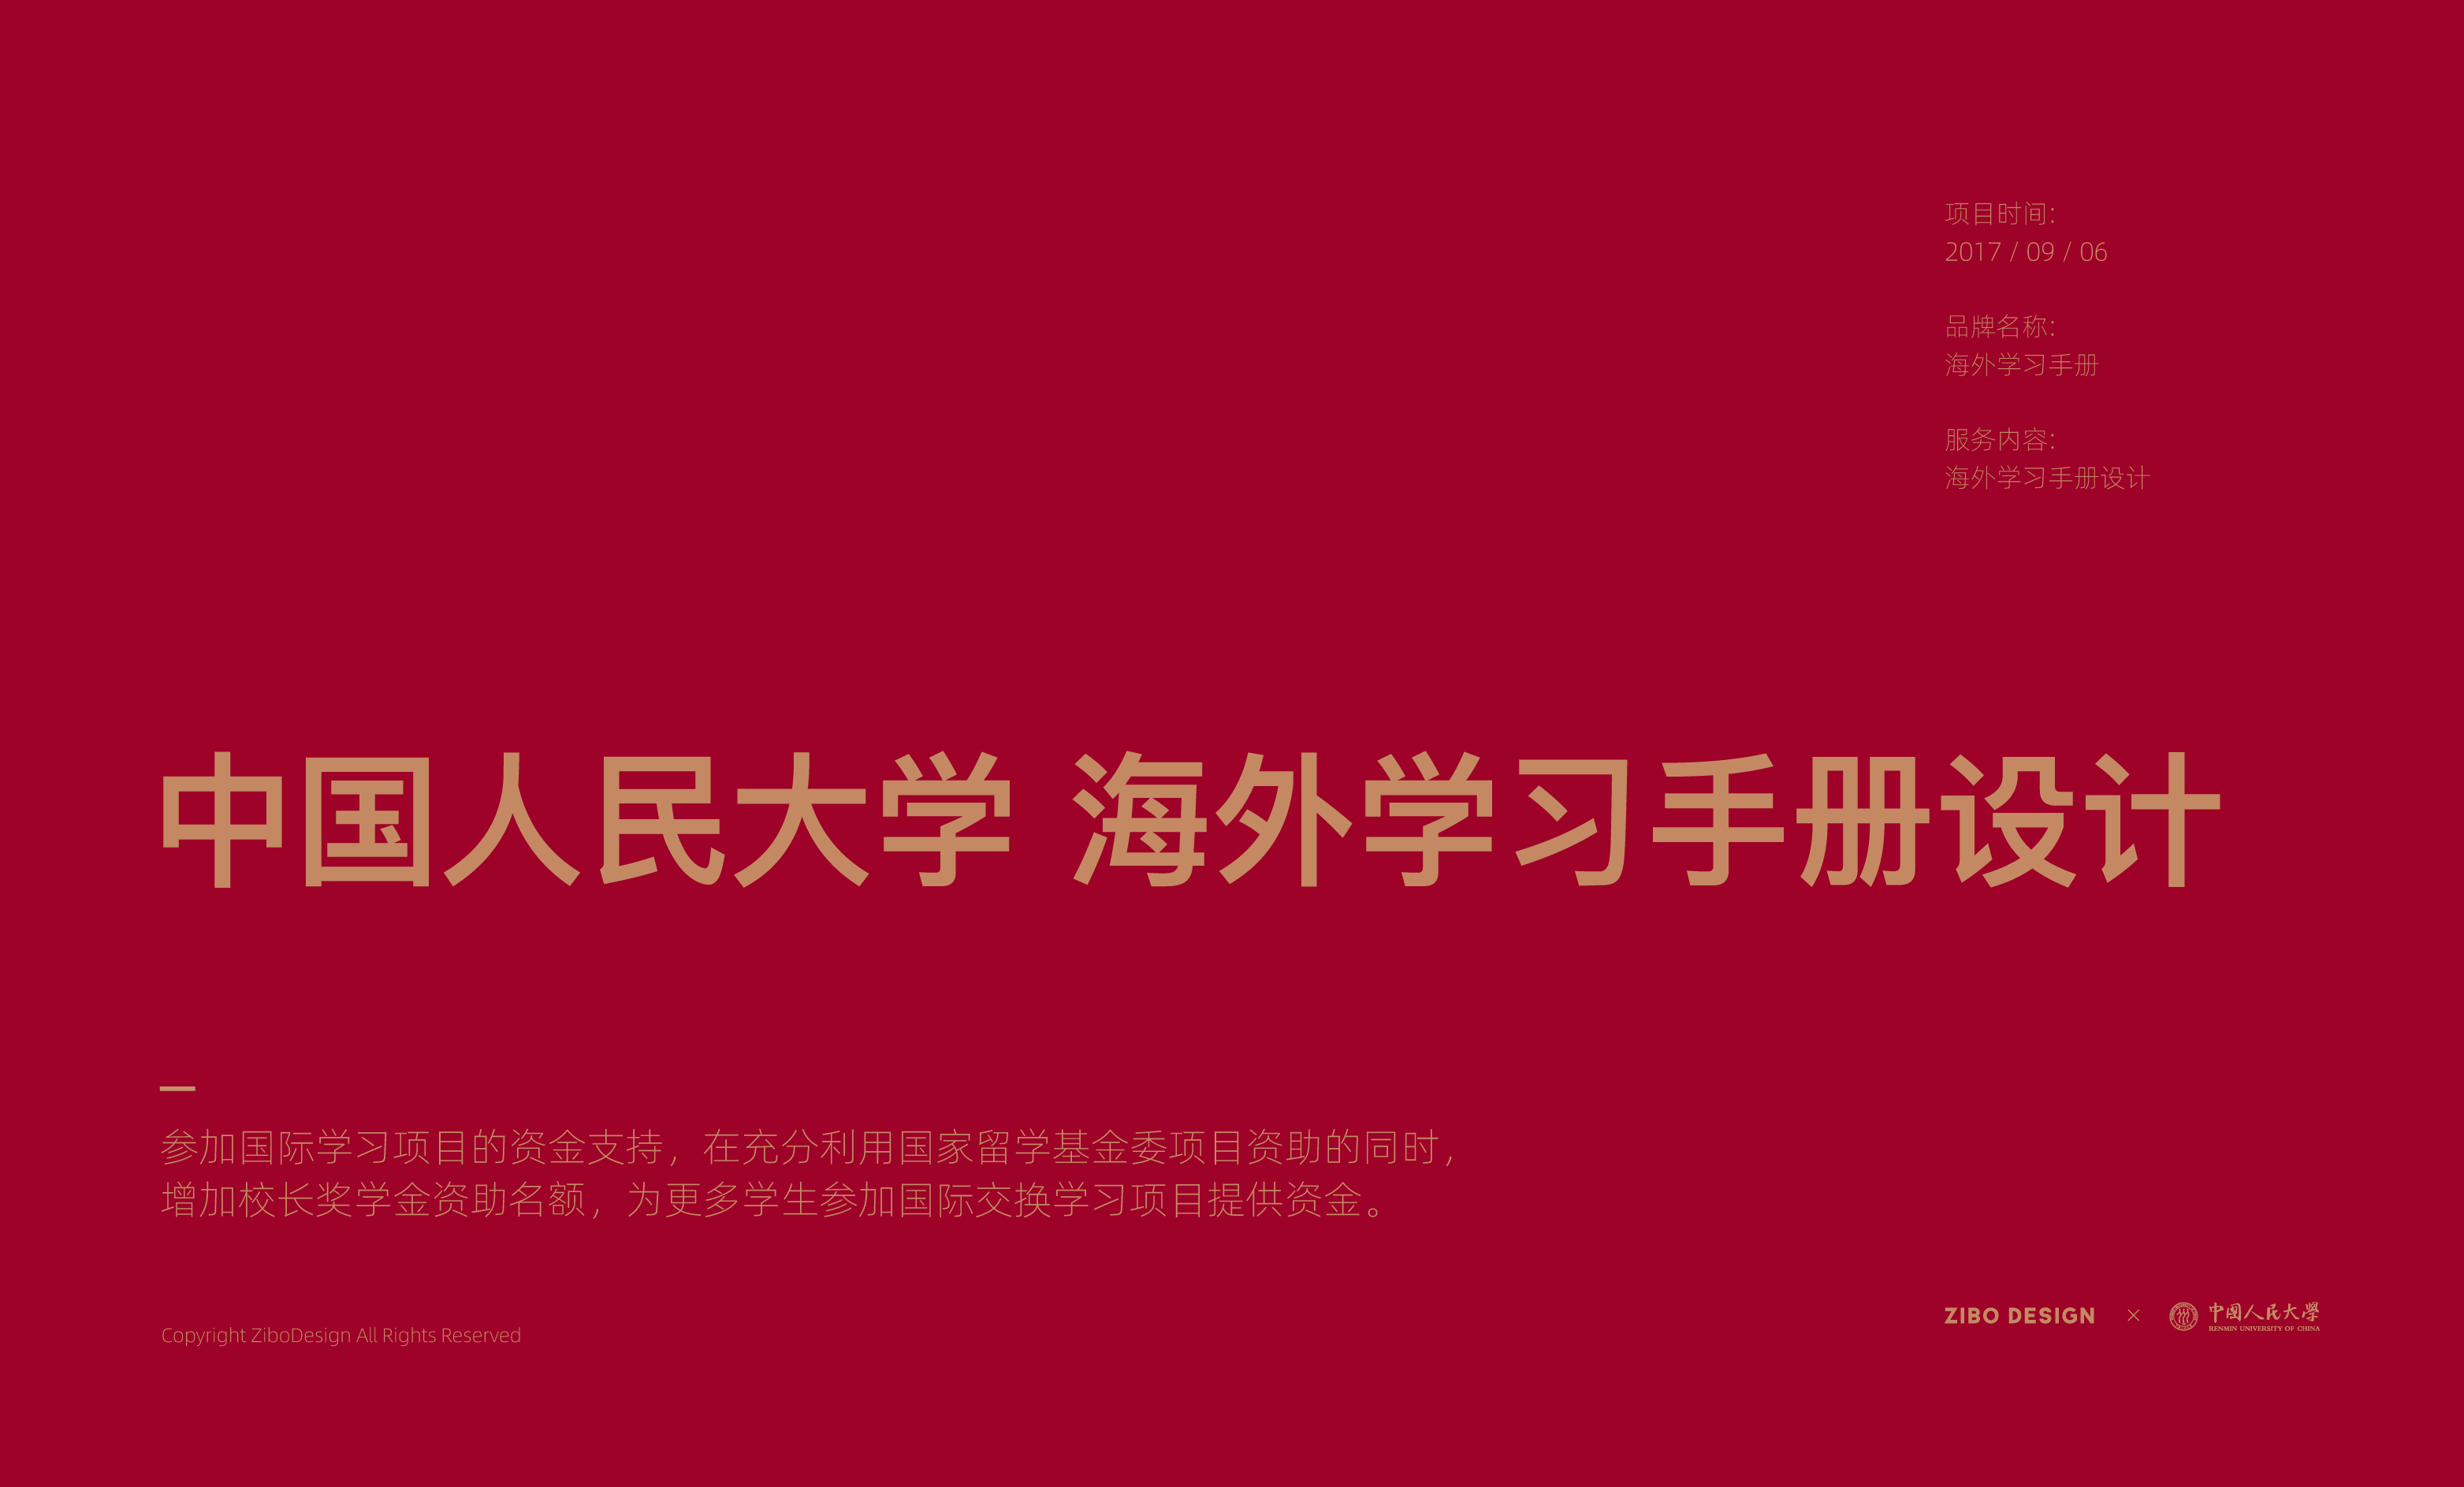 中国人民大学海外学习手册